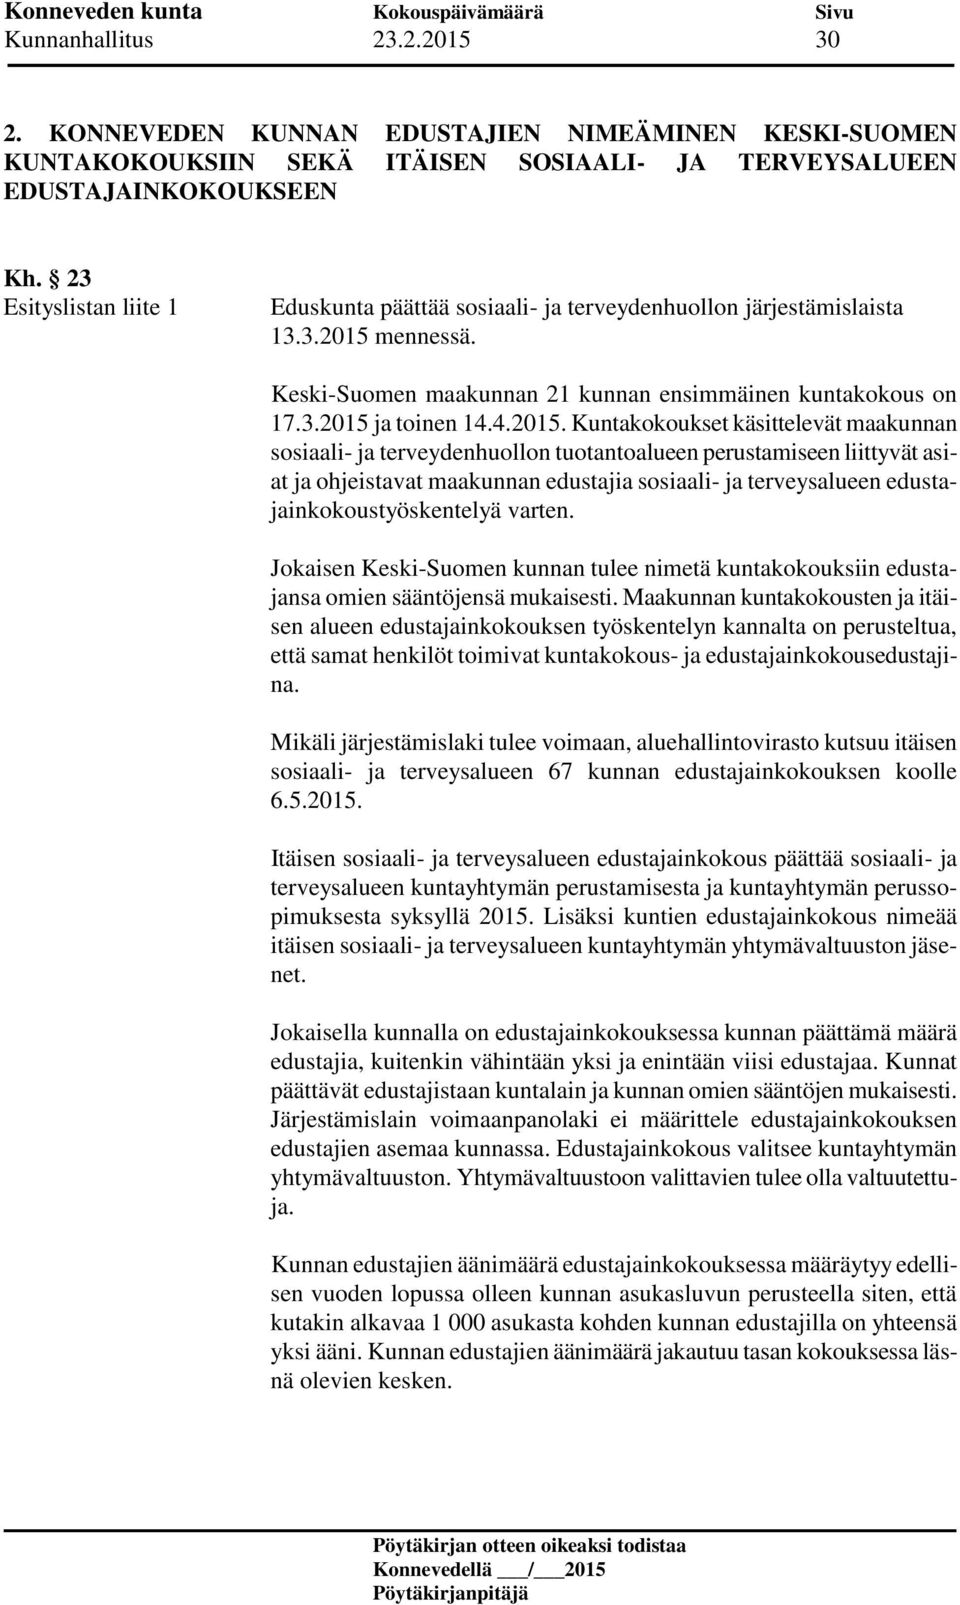 mennessä. Keski-Suomen maakunnan 21 kunnan ensimmäinen kuntakokous on 17.3.2015 